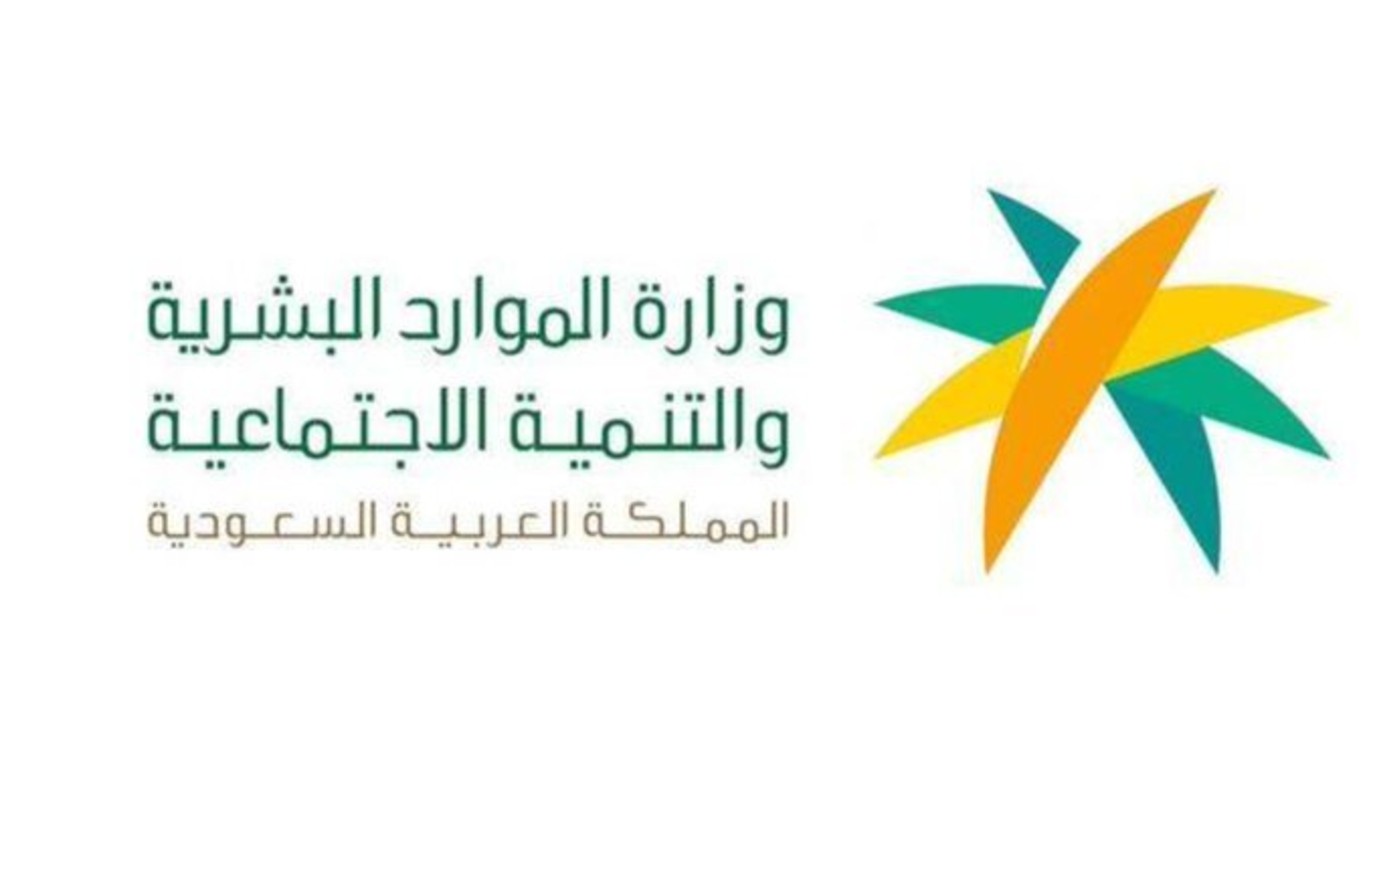 وزارة الموارد البشرية السعودية: يمكن التسجيل في نظام الضمان الاجتماعي المطور بشكل مستقل في هذه الحالة